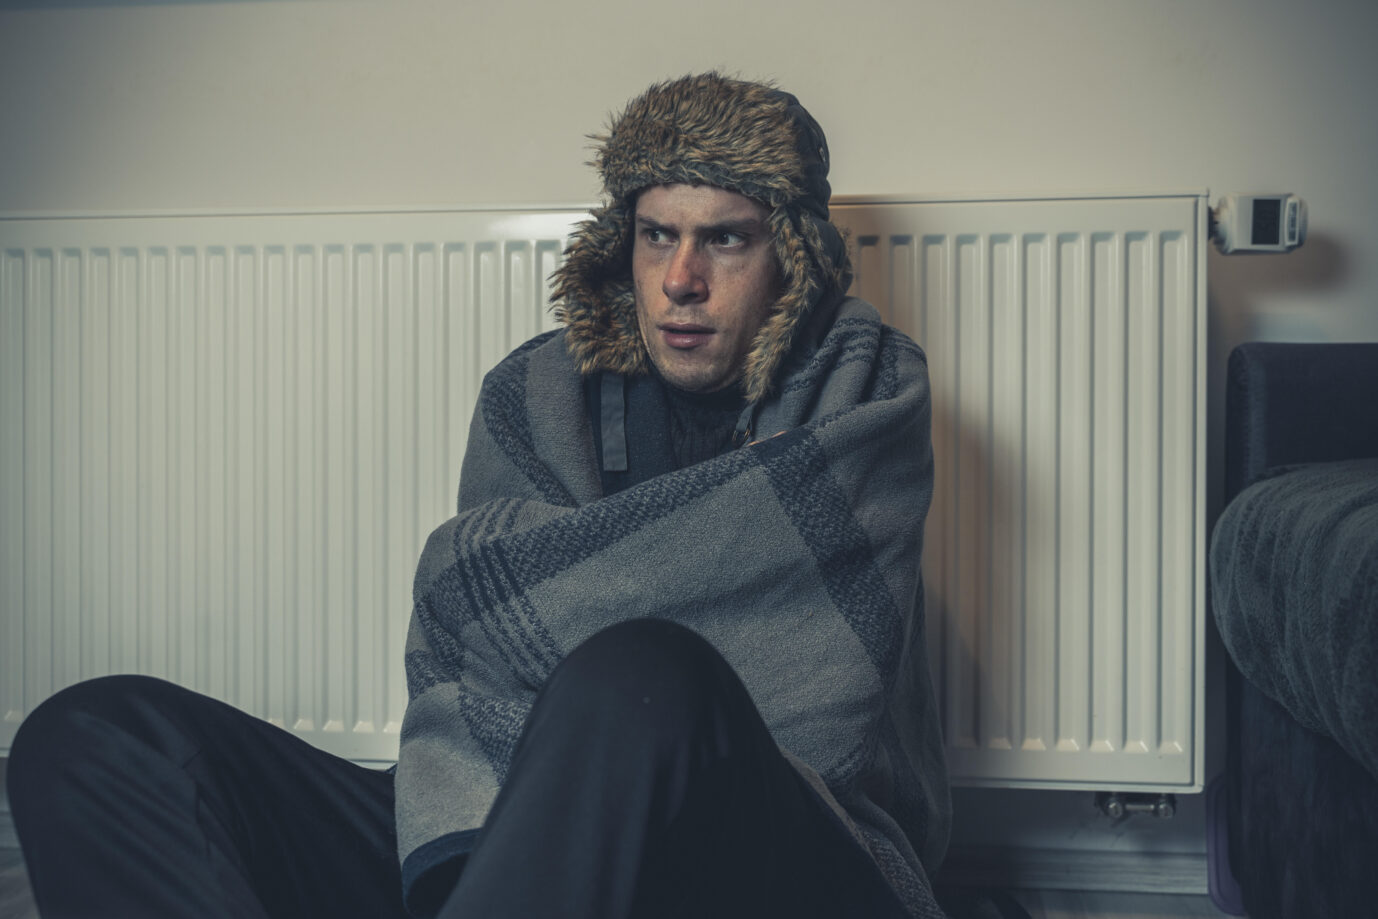 junger Mann sitzt frierend warm angezogen in seiner Wohnung vor der Heizung mit Wintermütze und Decke bedeckt. Symbolbild defekte Heizung und kalte Wohnung || Modellfreigabe vorhanden